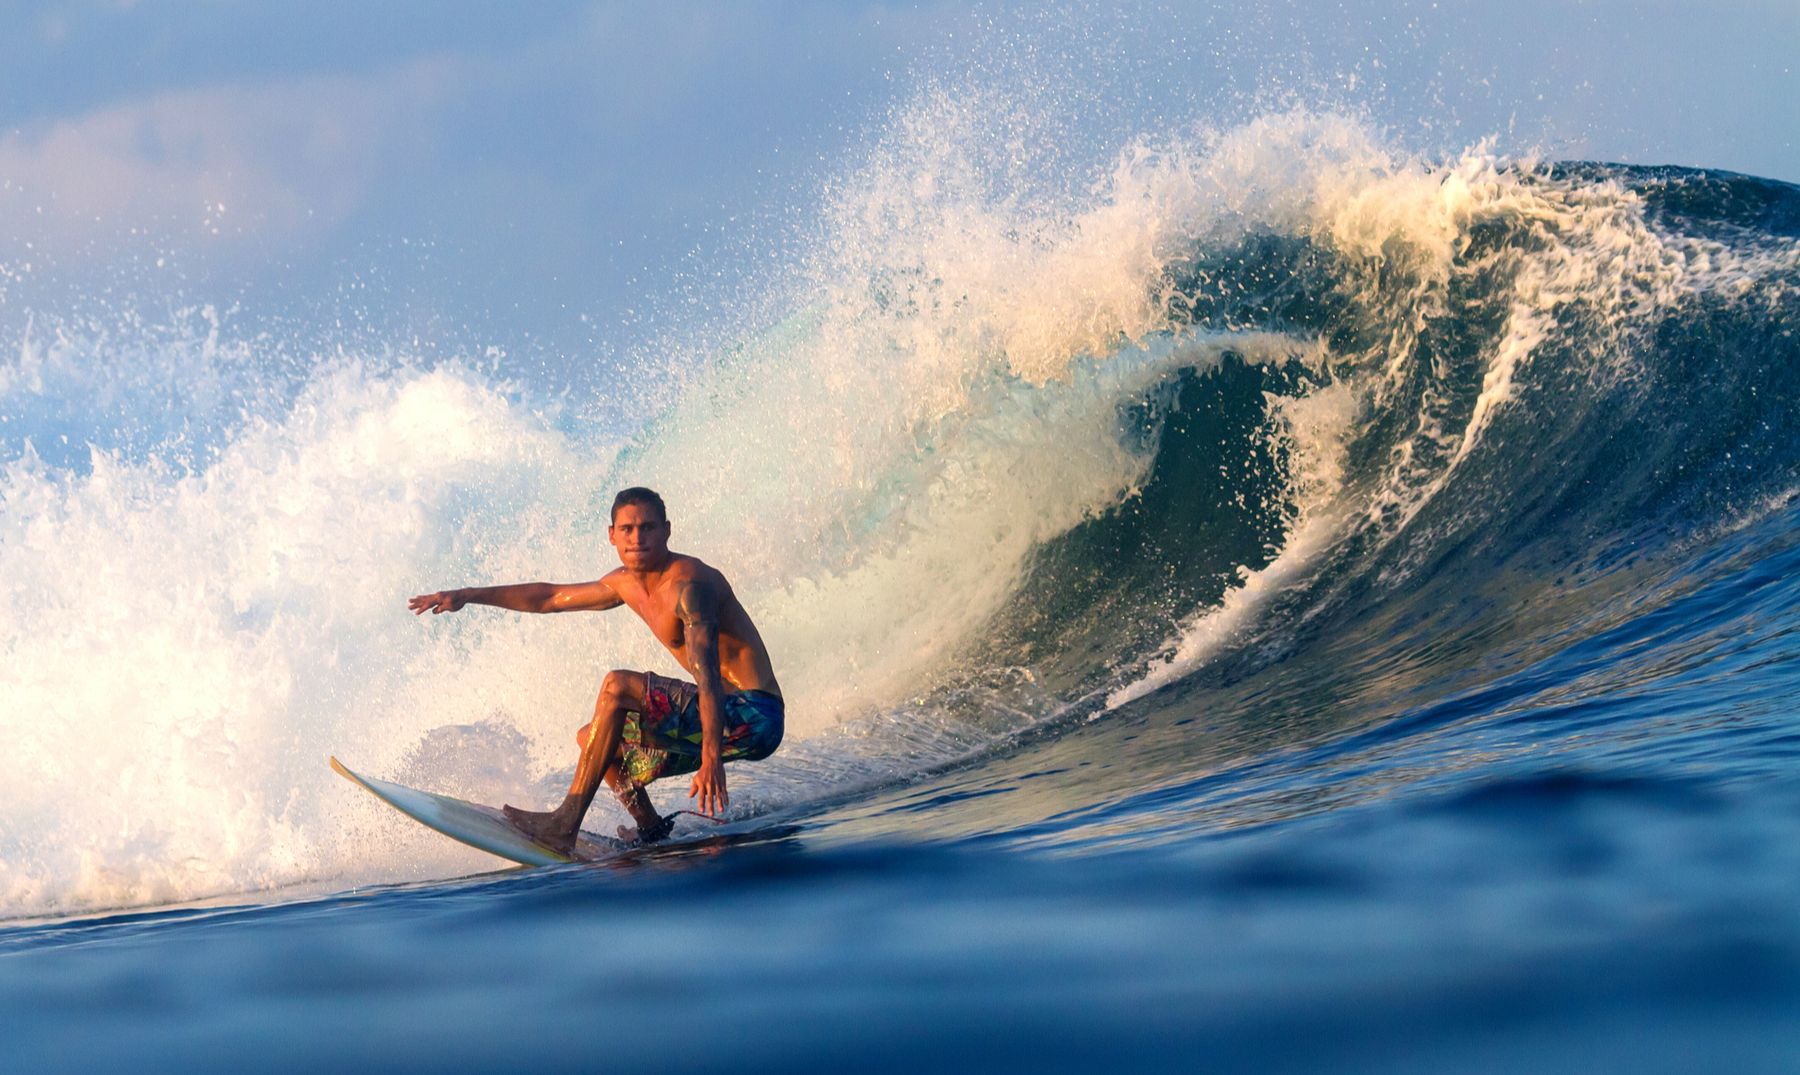 ¿Cómo el surf puede mejorar tu salud y bienestar?